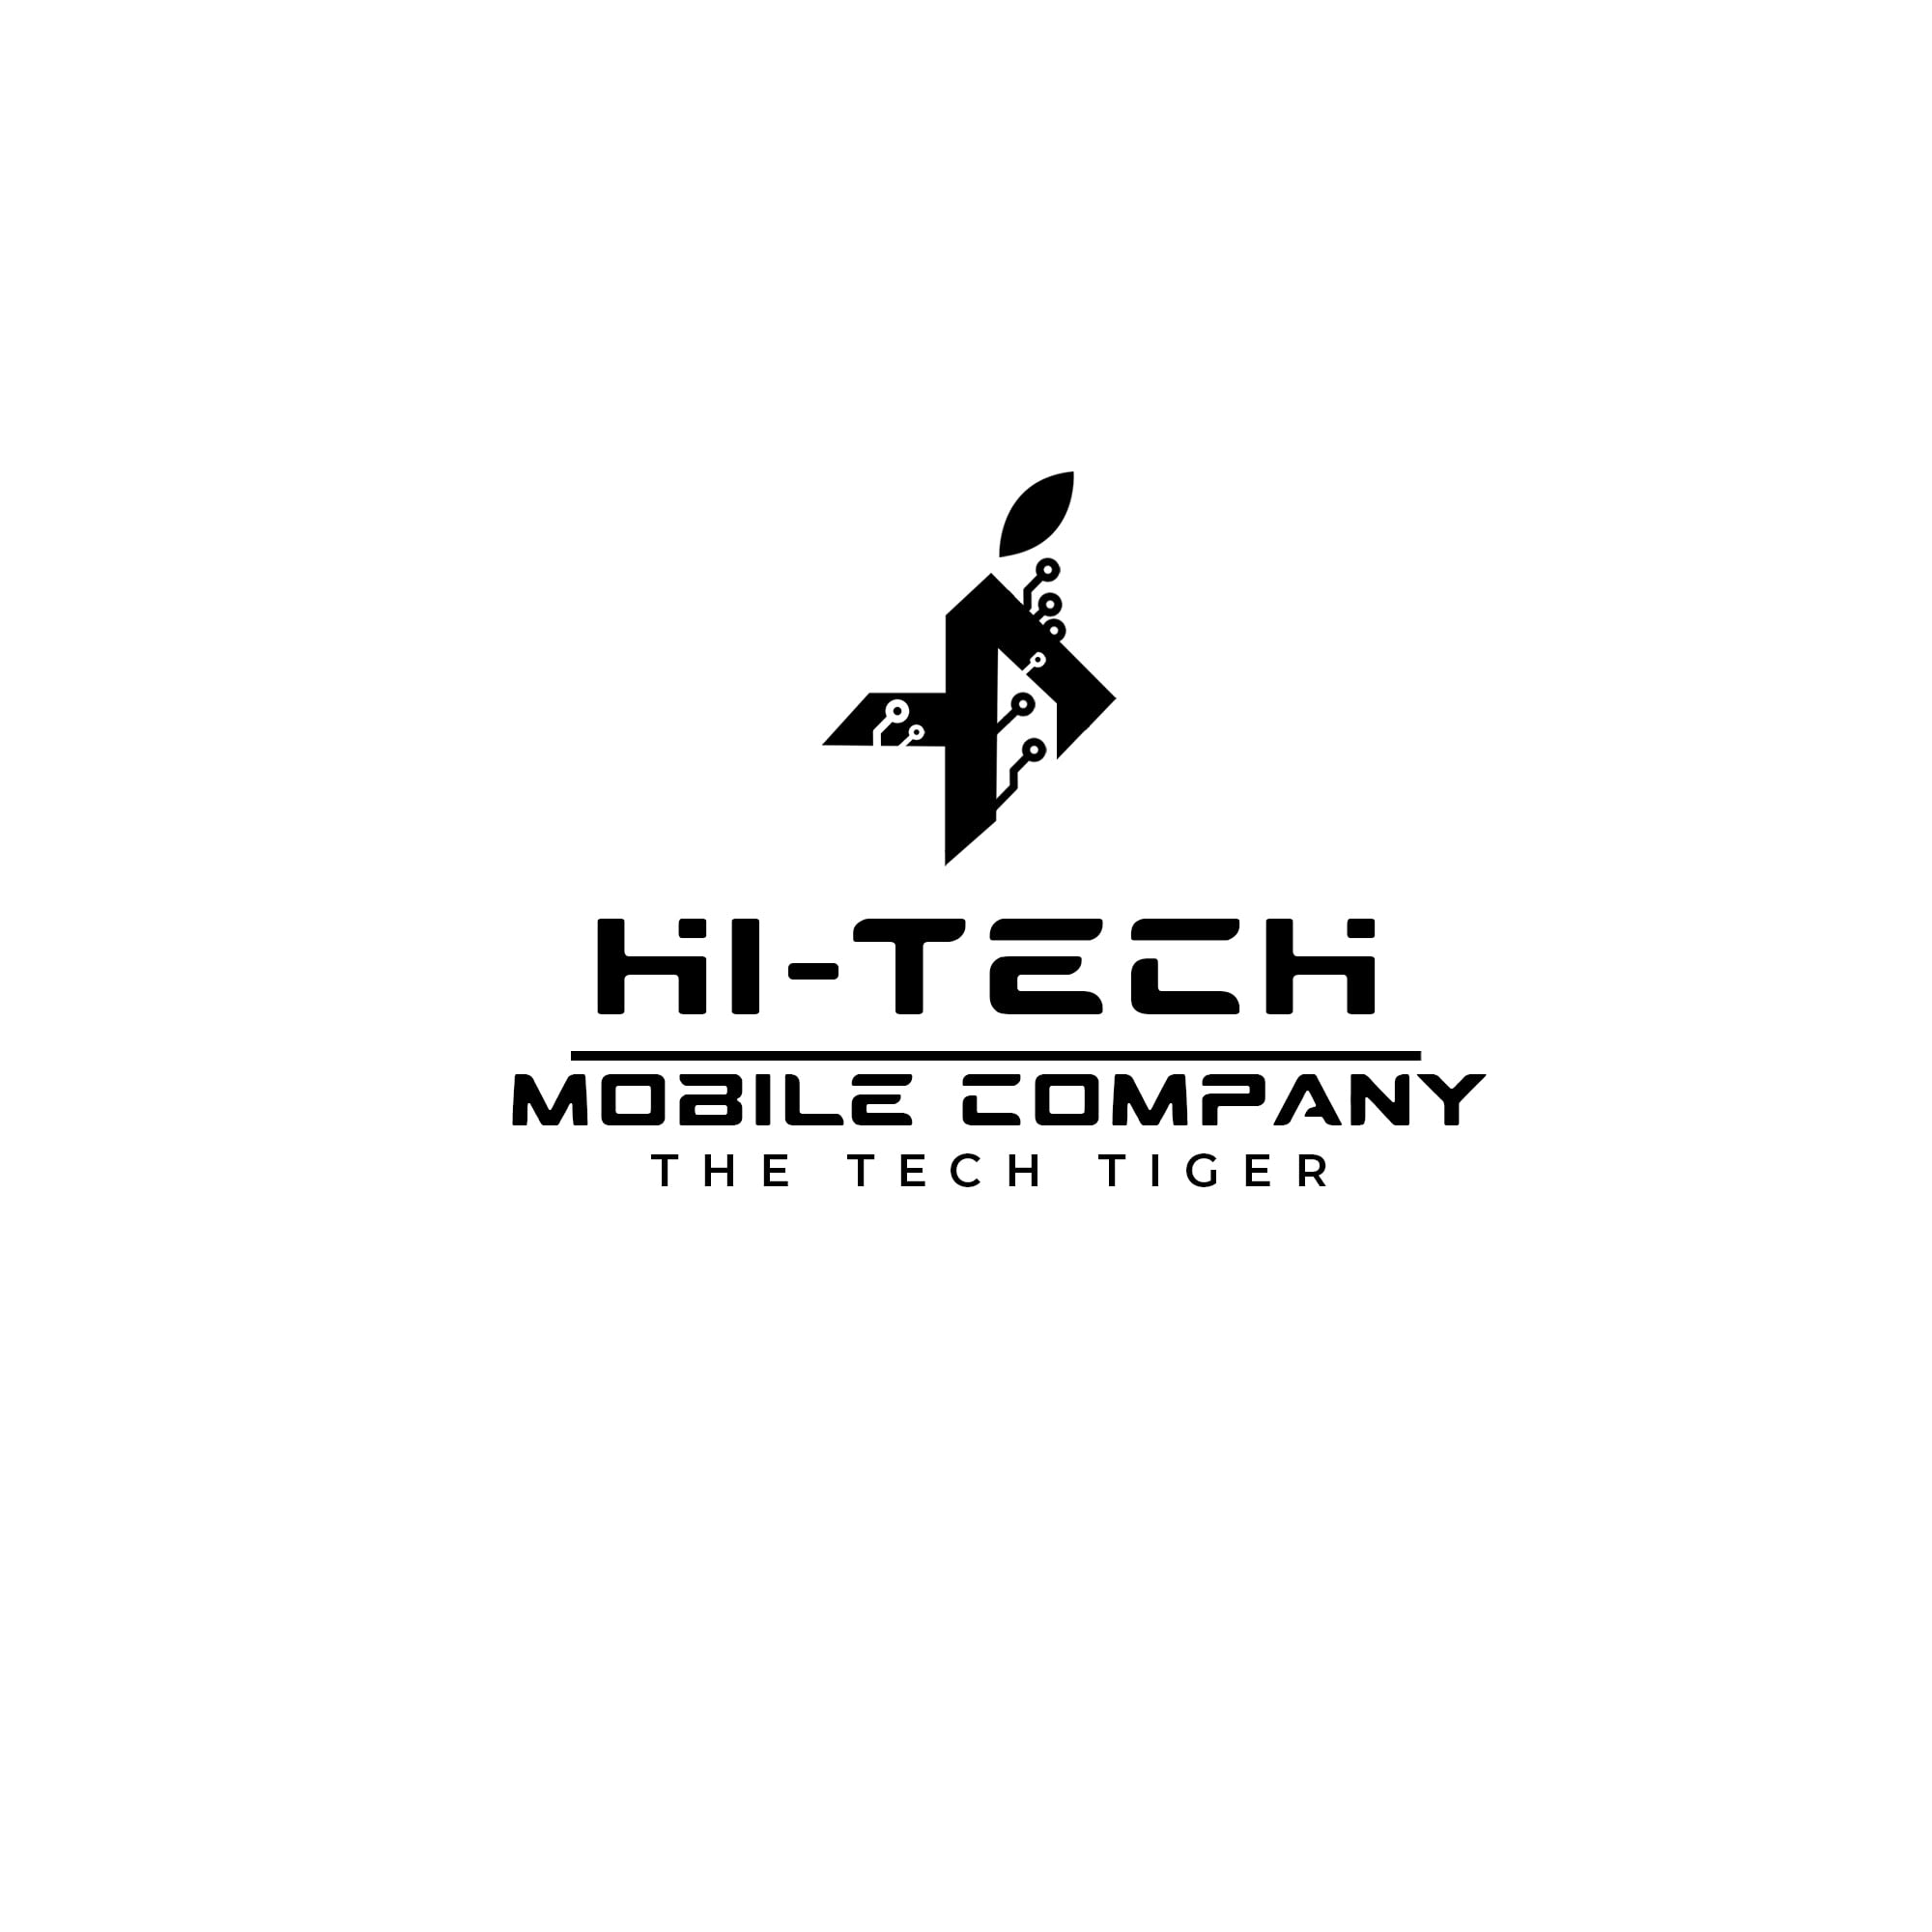 Hitech Mobile Company